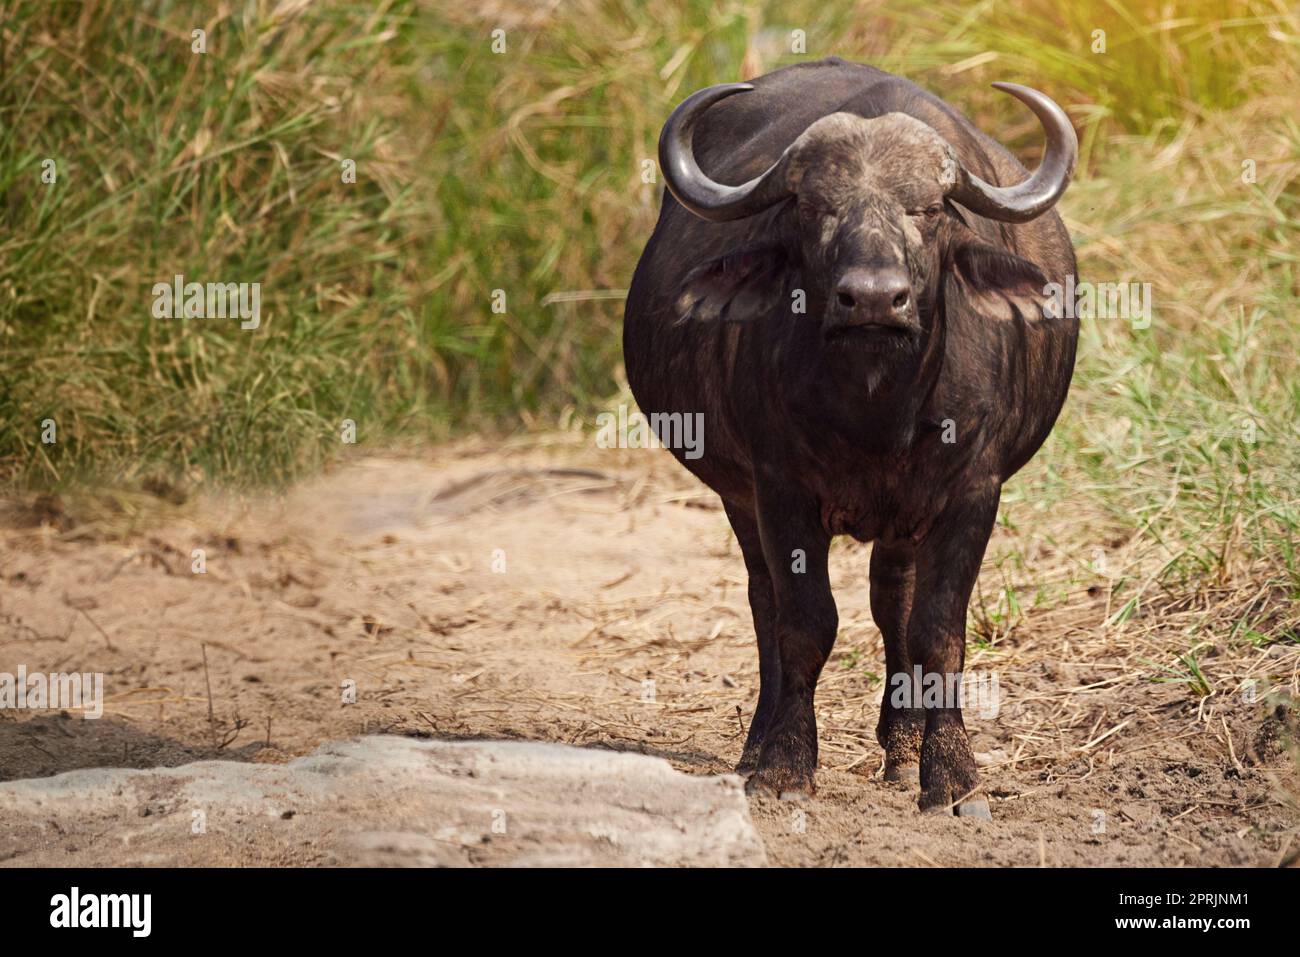 Le sue dimensioni lo mantengono al sicuro. Sparo a tutta lunghezza di un bufalo sulle pianure africane. Foto Stock